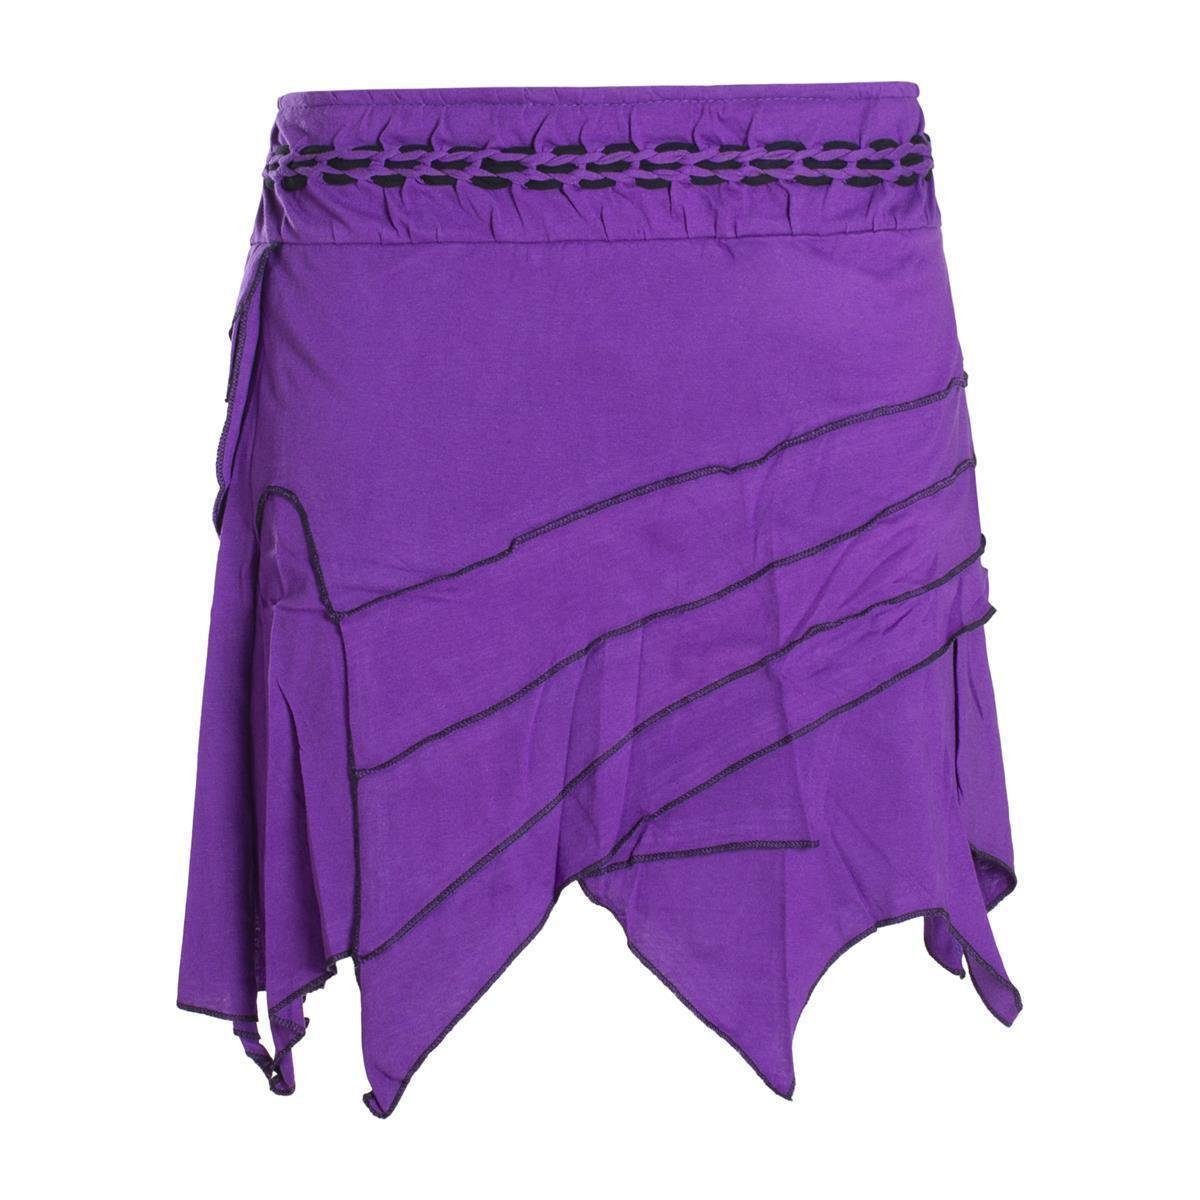 Vishes Zipfelrock Zipfelrock Elfenrock Patchwork Asymmetrisch Tasche Hippie, Ethno, Goa Style violett